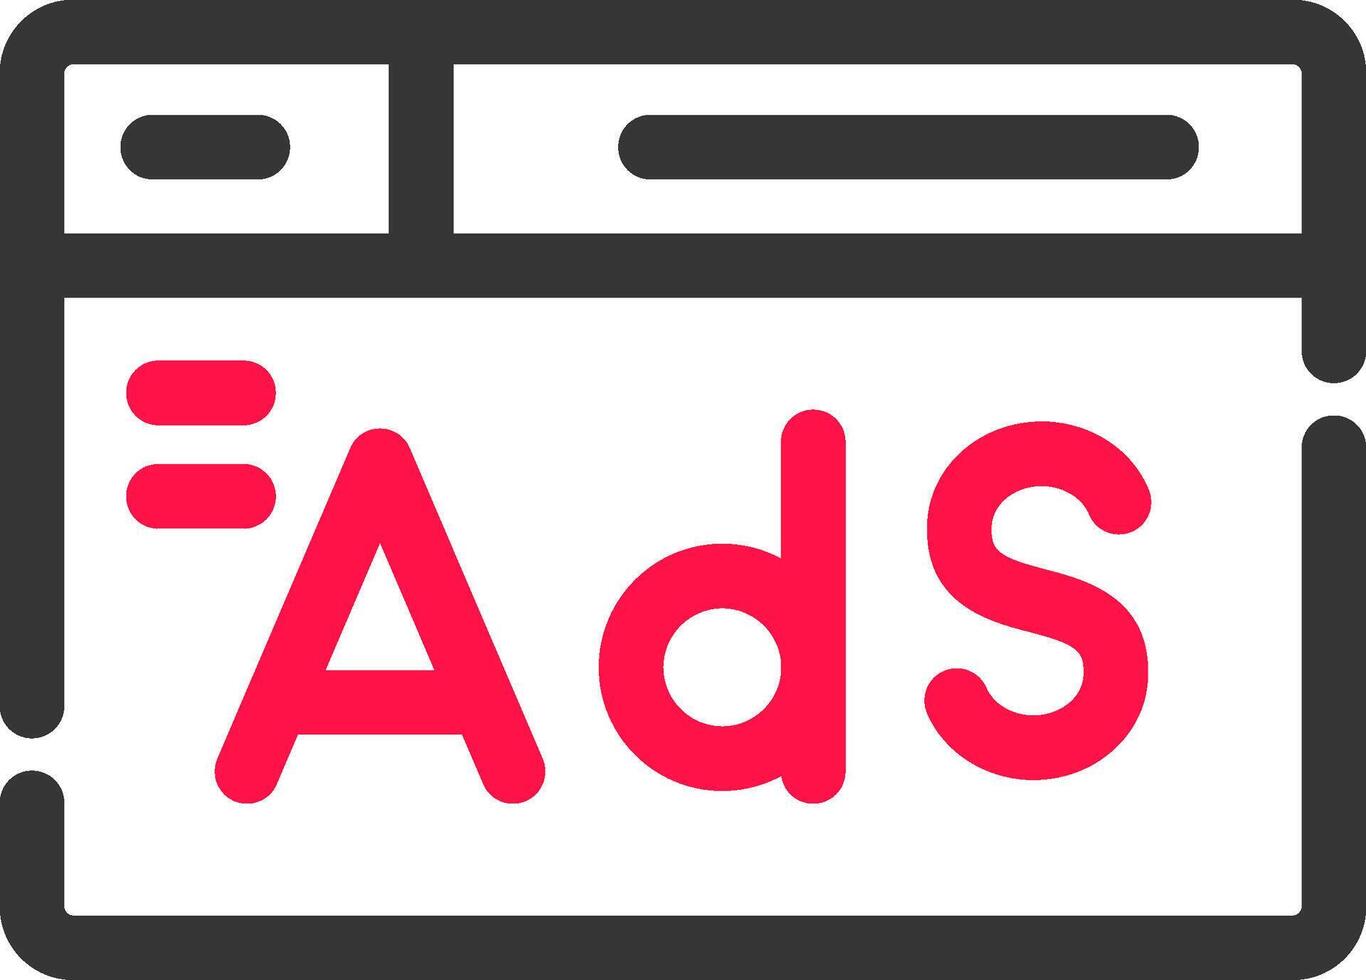 Advertising Creative Icon Design vector